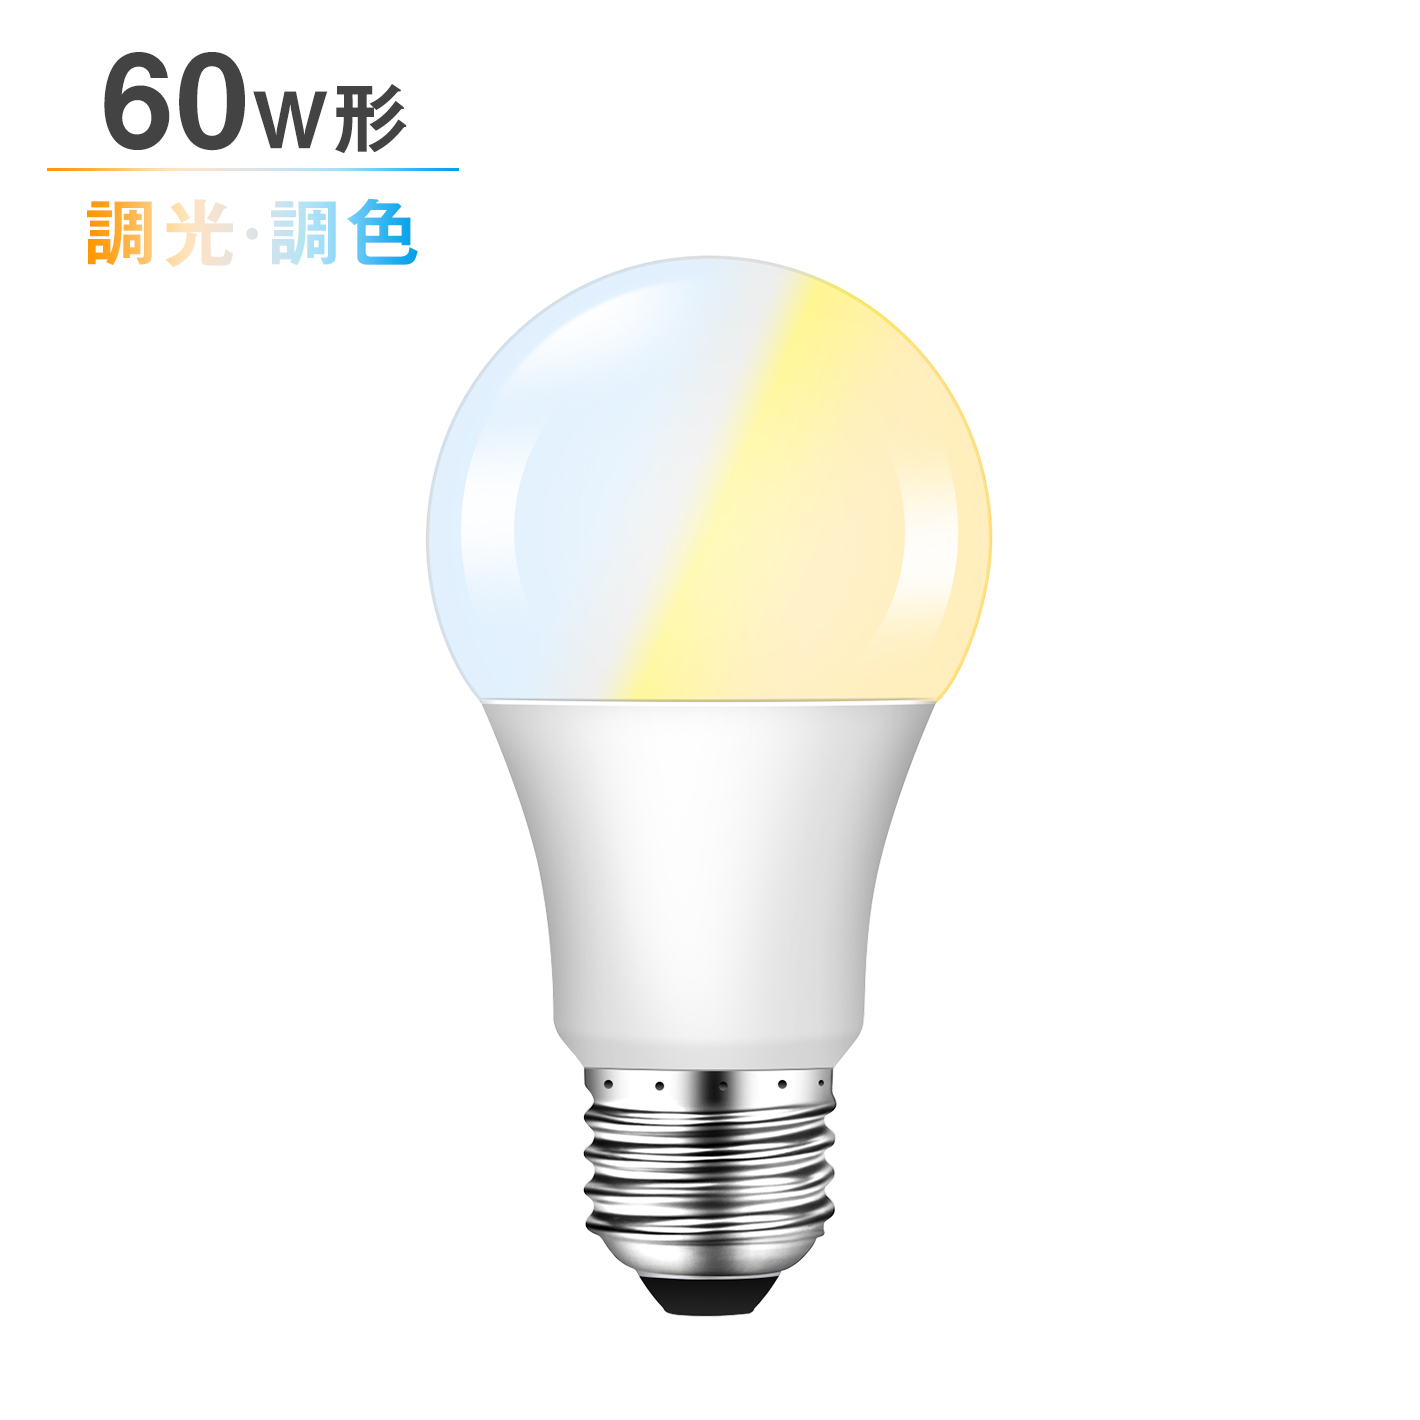 共同照明LED専門店-【GT-B-9W-CT-2】LED電球 60W形相当 E26 調光調色 広配光 リモコン電球 シーリングライト 電球色 昼白色 昼光色 リモコン操作 一般電球 